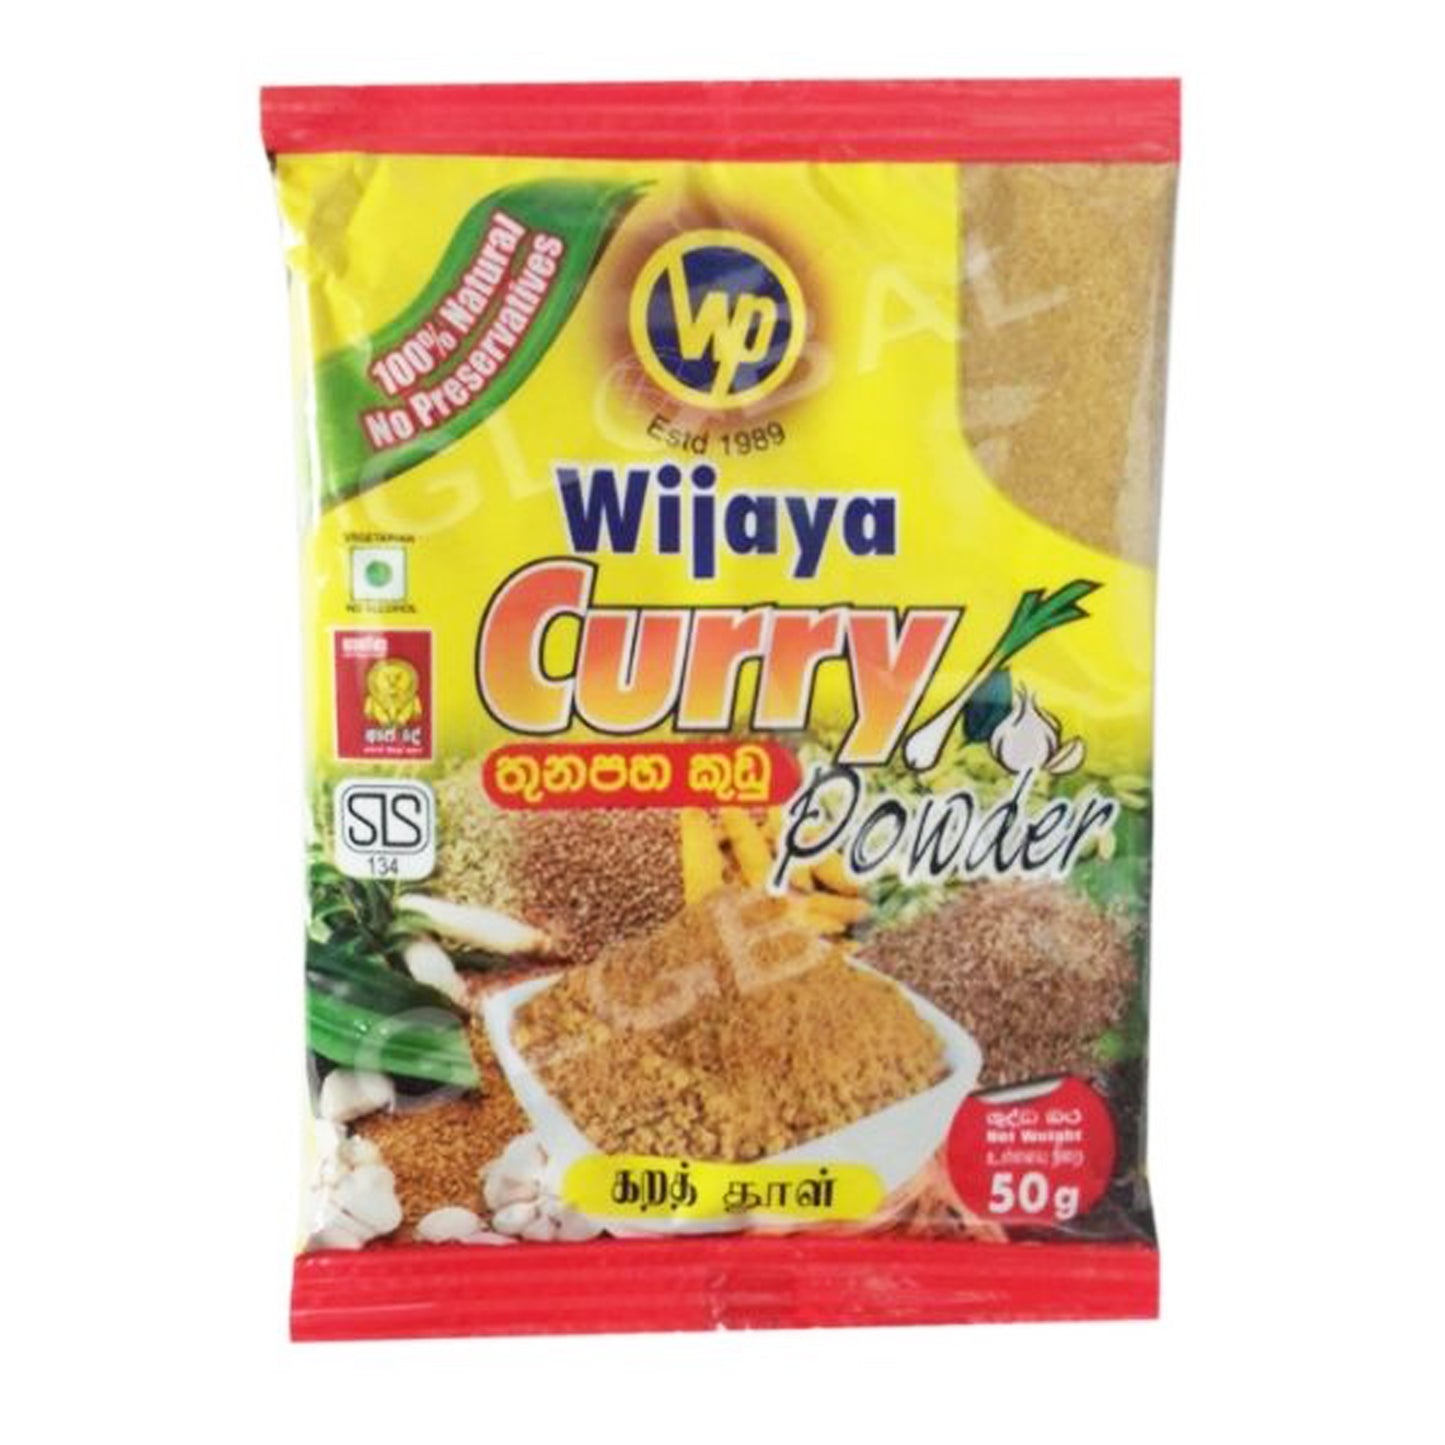 Wijaya Curry Powder (50g)